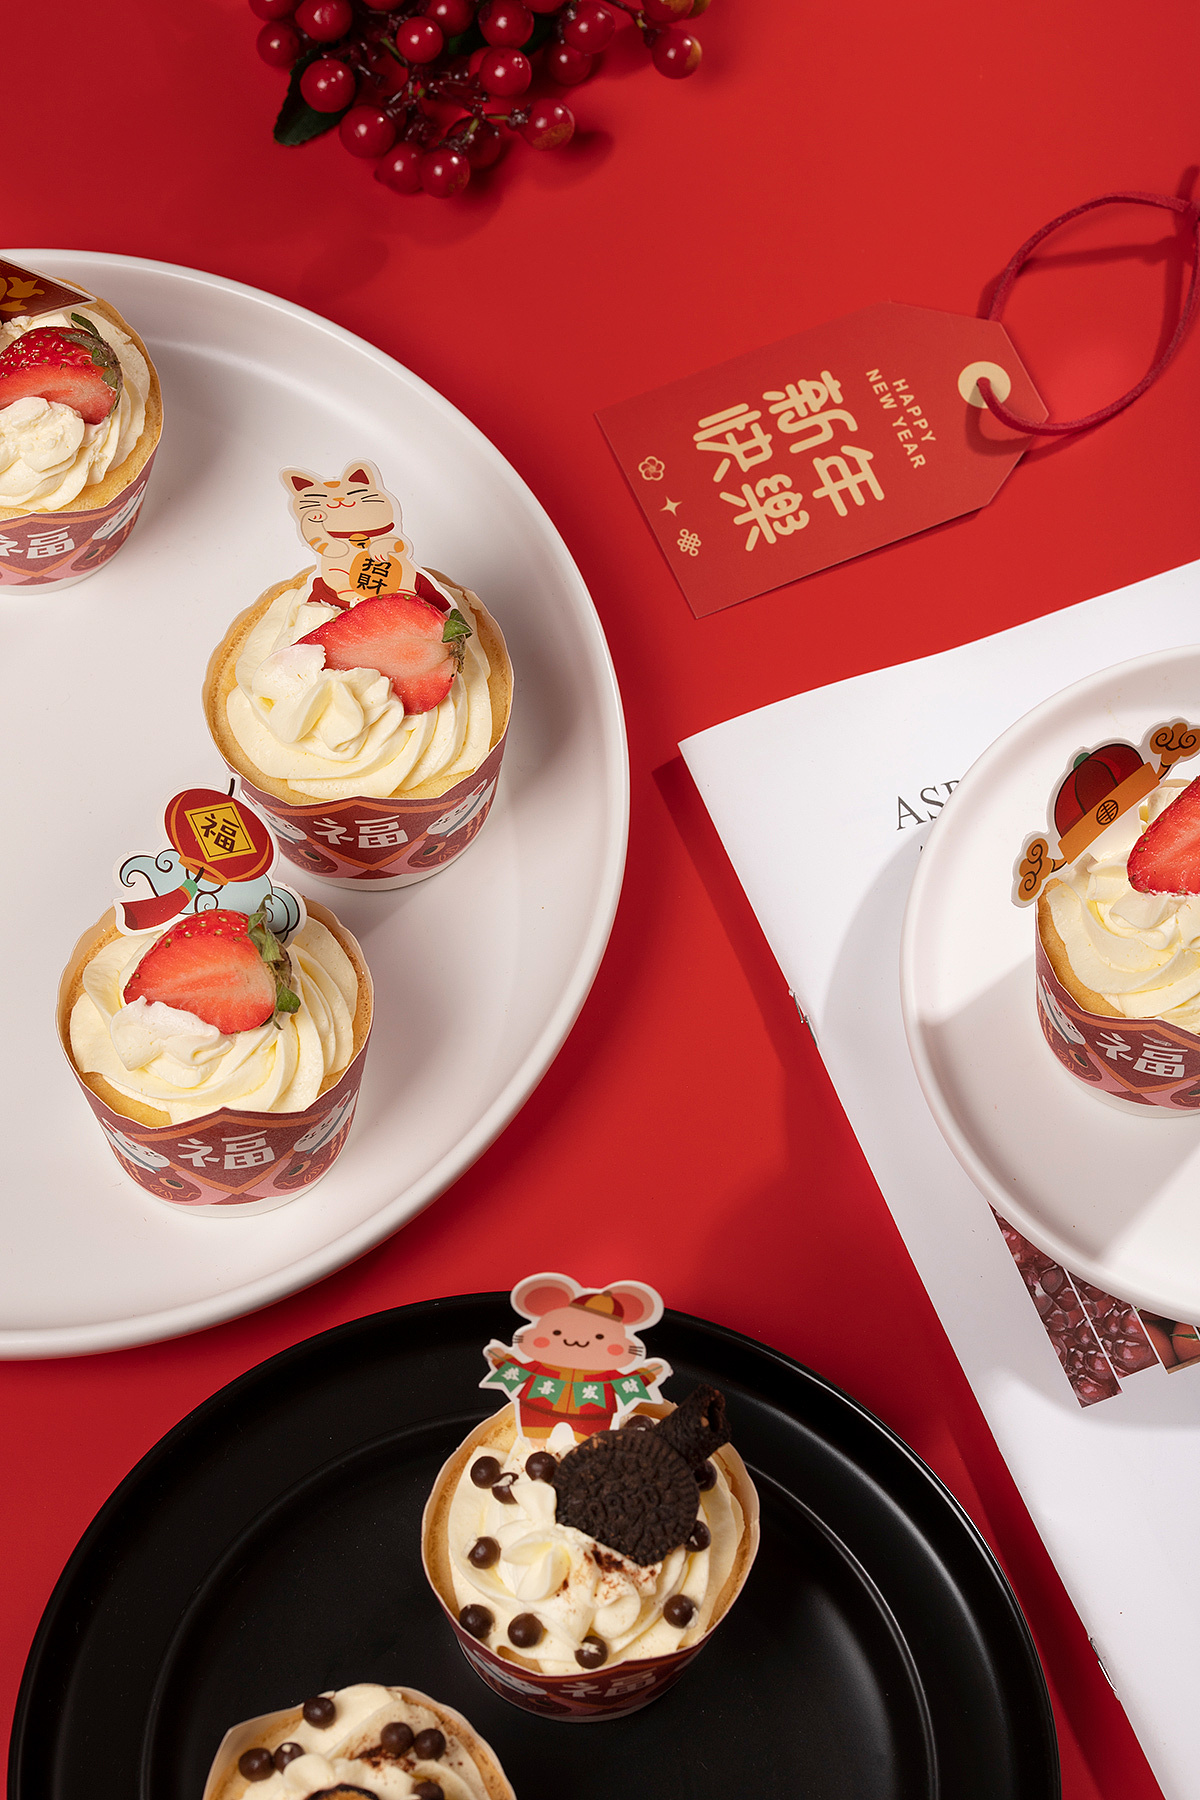 分享一波萌萌哒新年蛋糕～-美食俱乐部-重庆购物狂